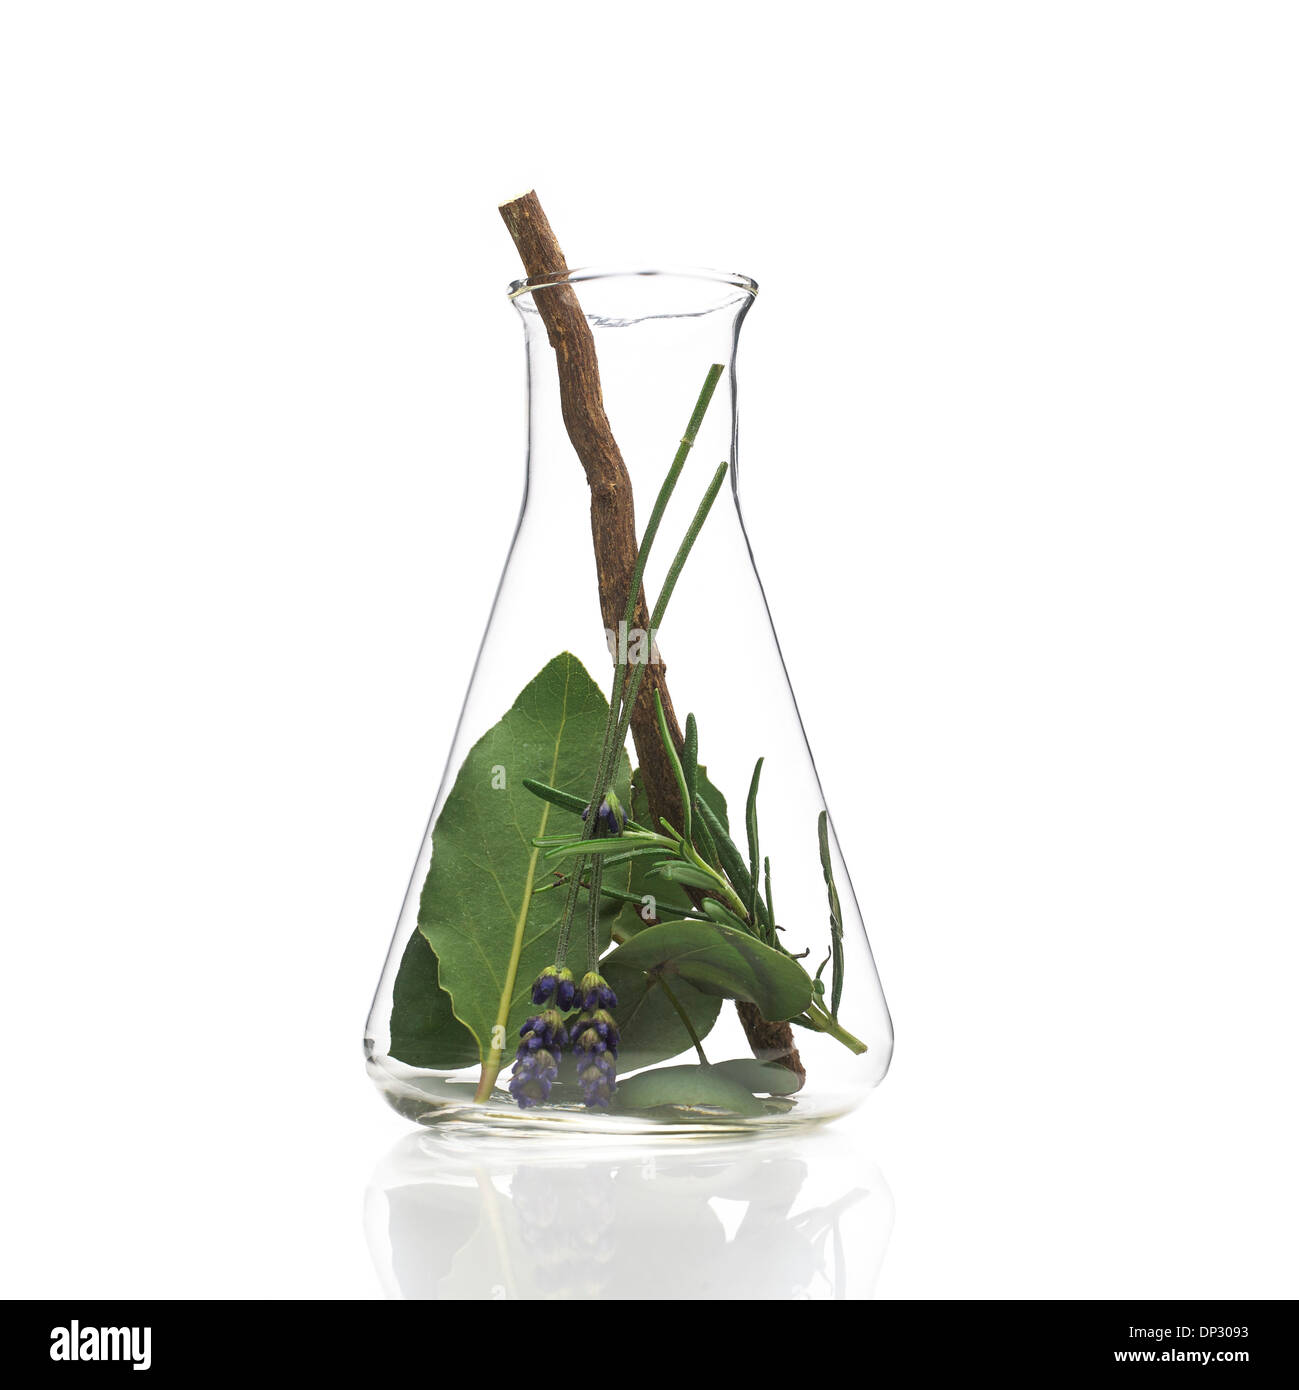 Plantes médicinales, conceptual image Banque D'Images